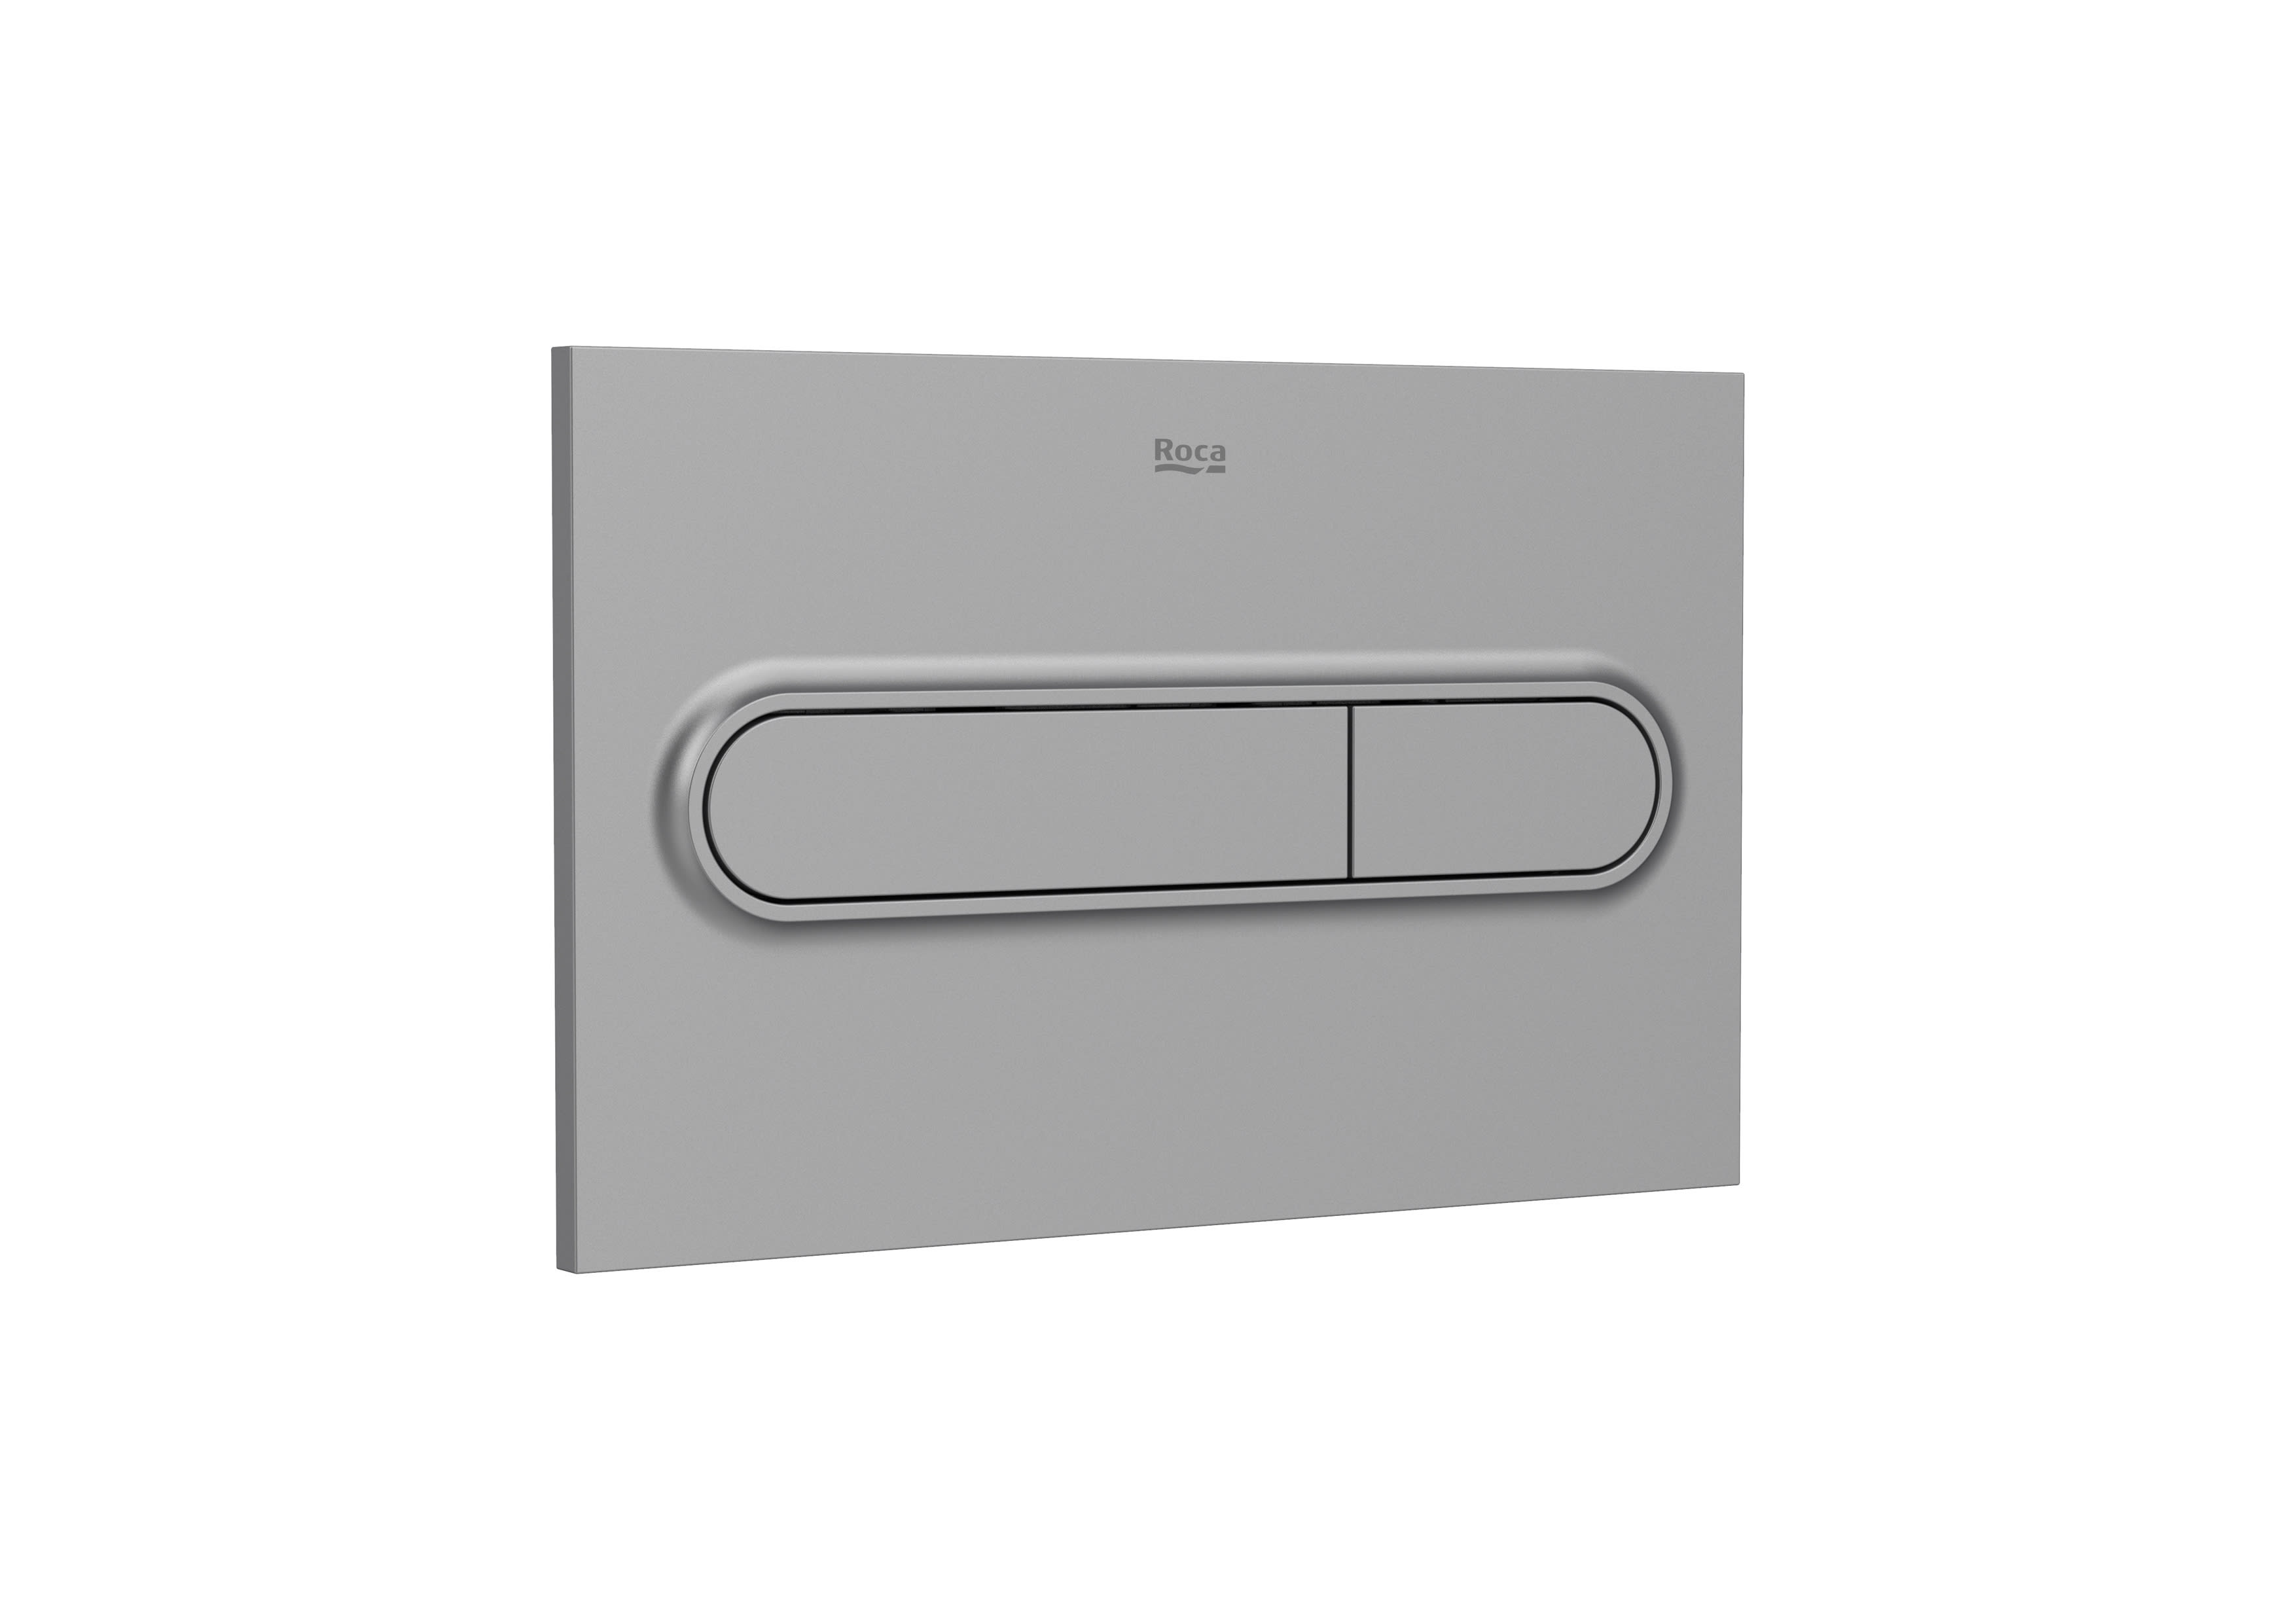 Placa de accionamiento para inodoro Roca In-Wall PL1 Dual One descarga doble pulsador gris